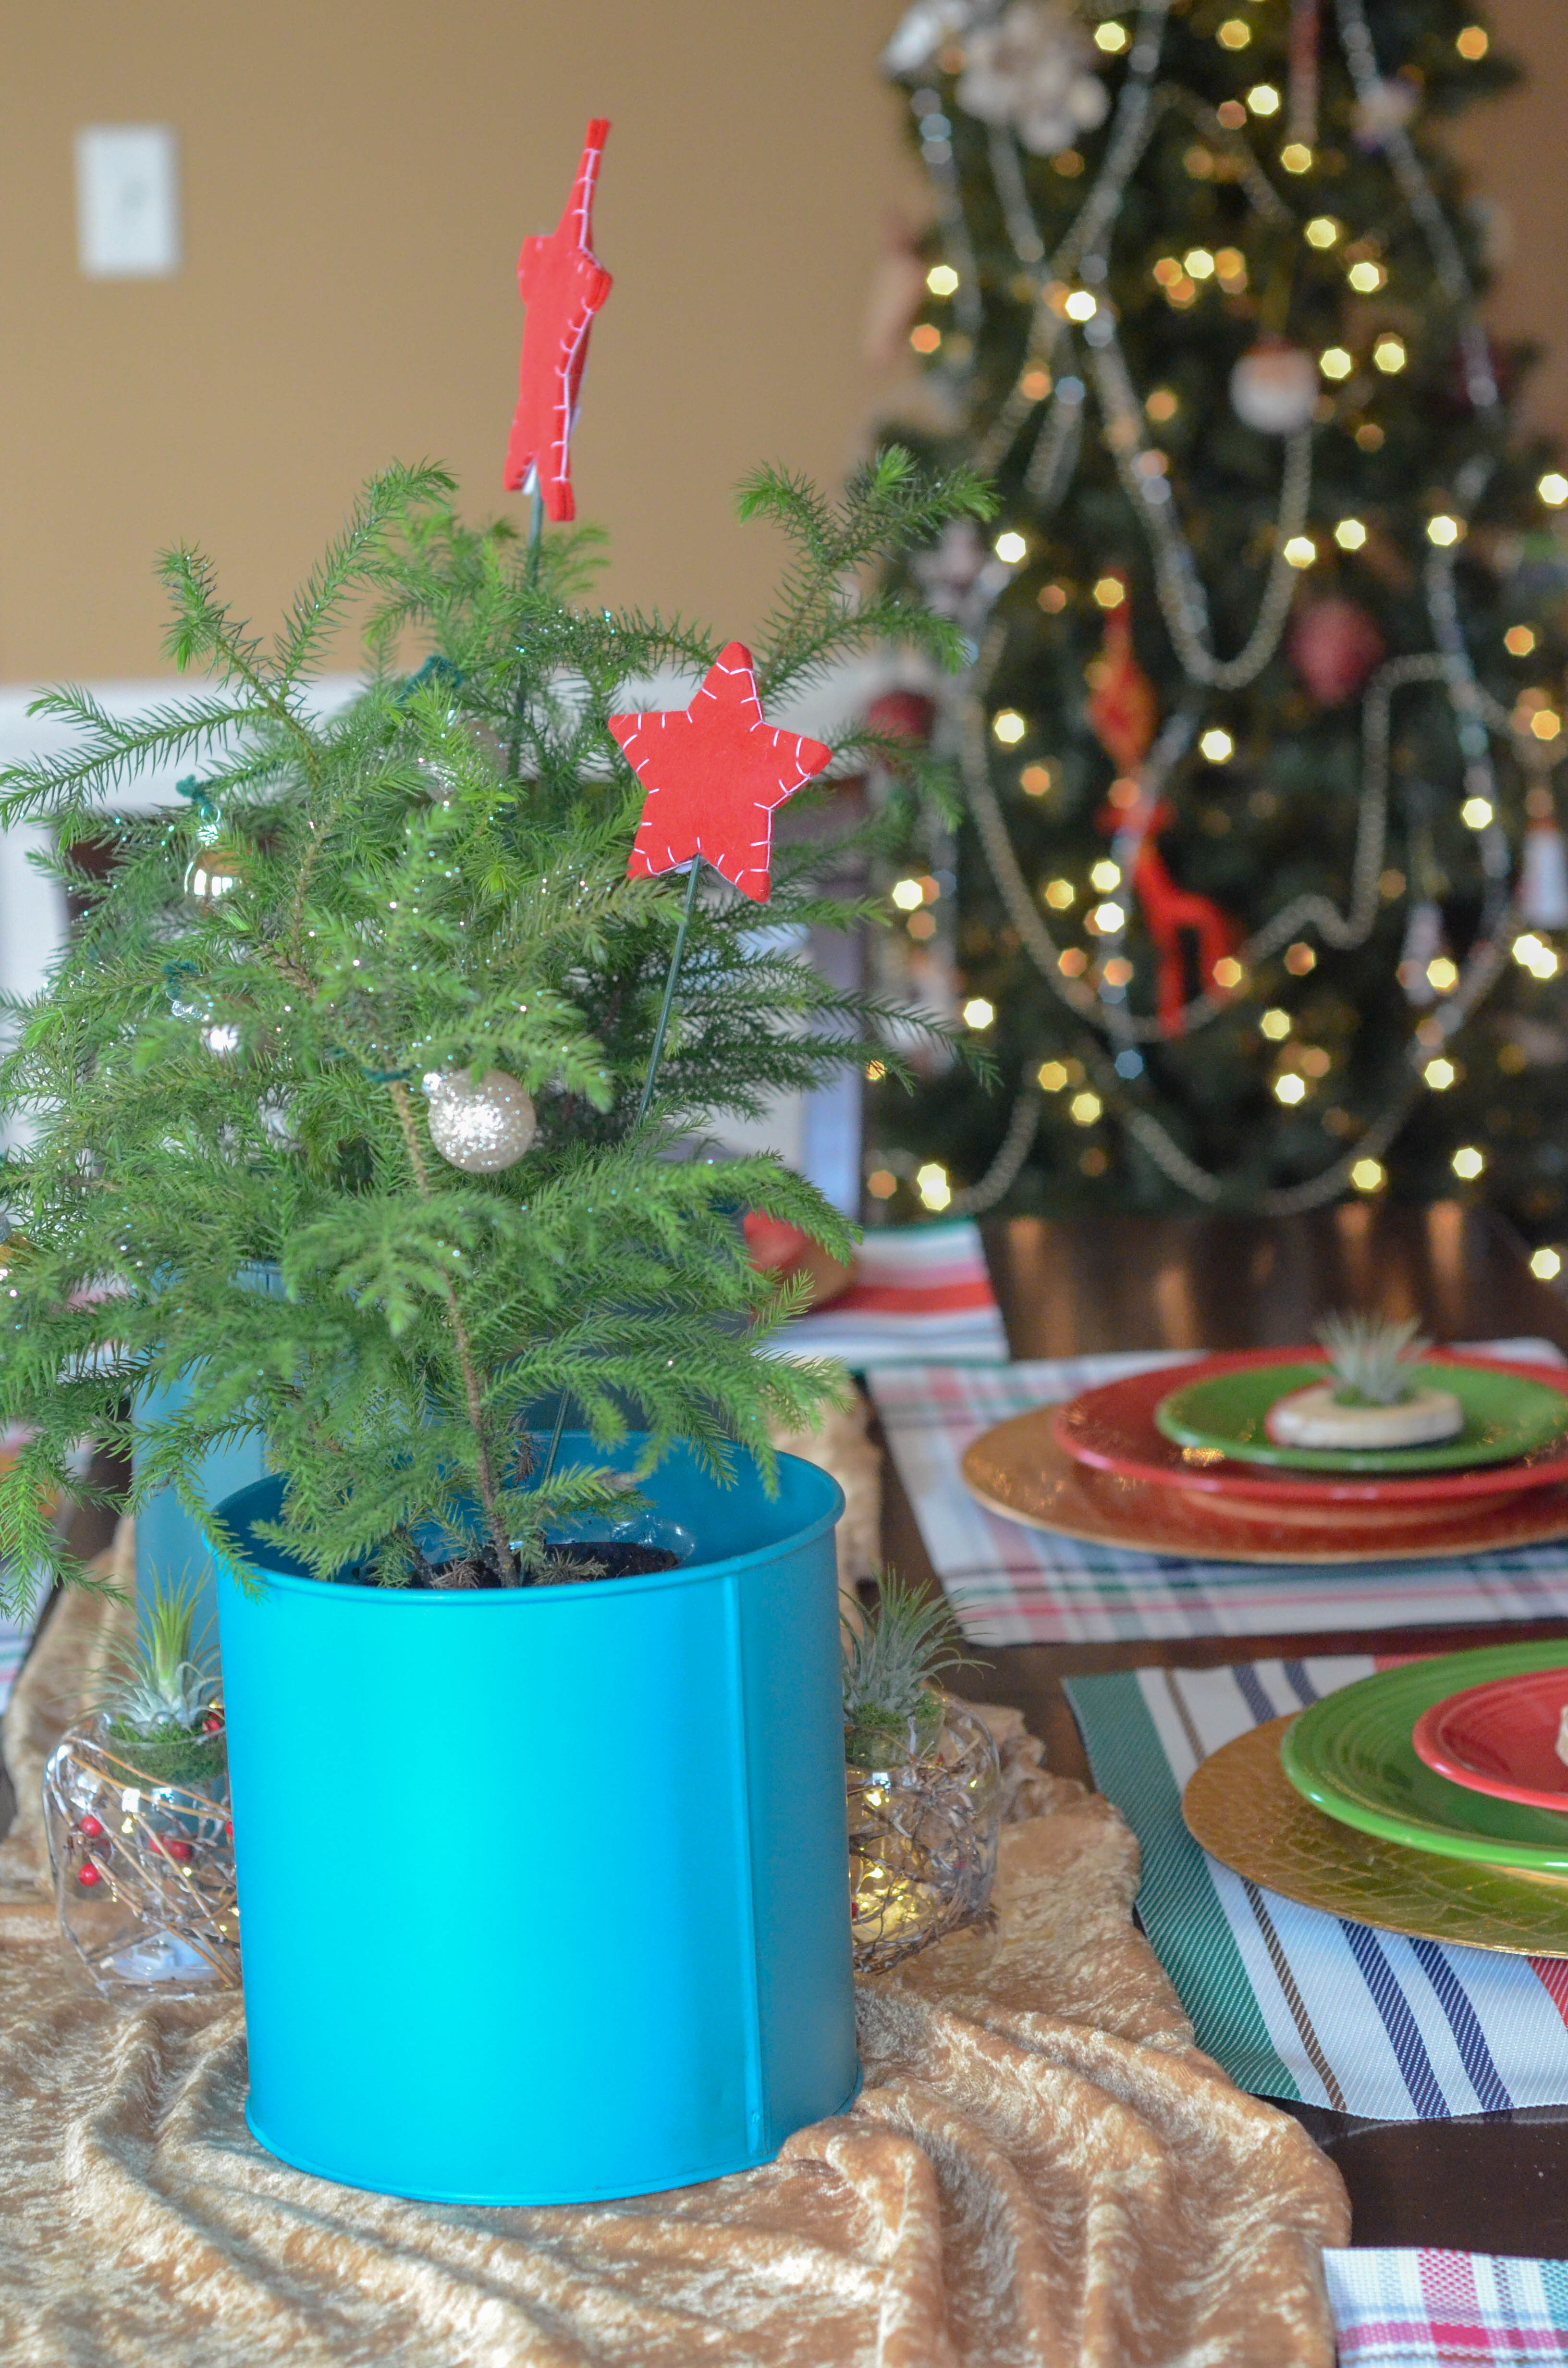 Decorating a Colorful Christmas Table with Plants - The Gifted Gabber #christmastable #christmas #christmasdecor